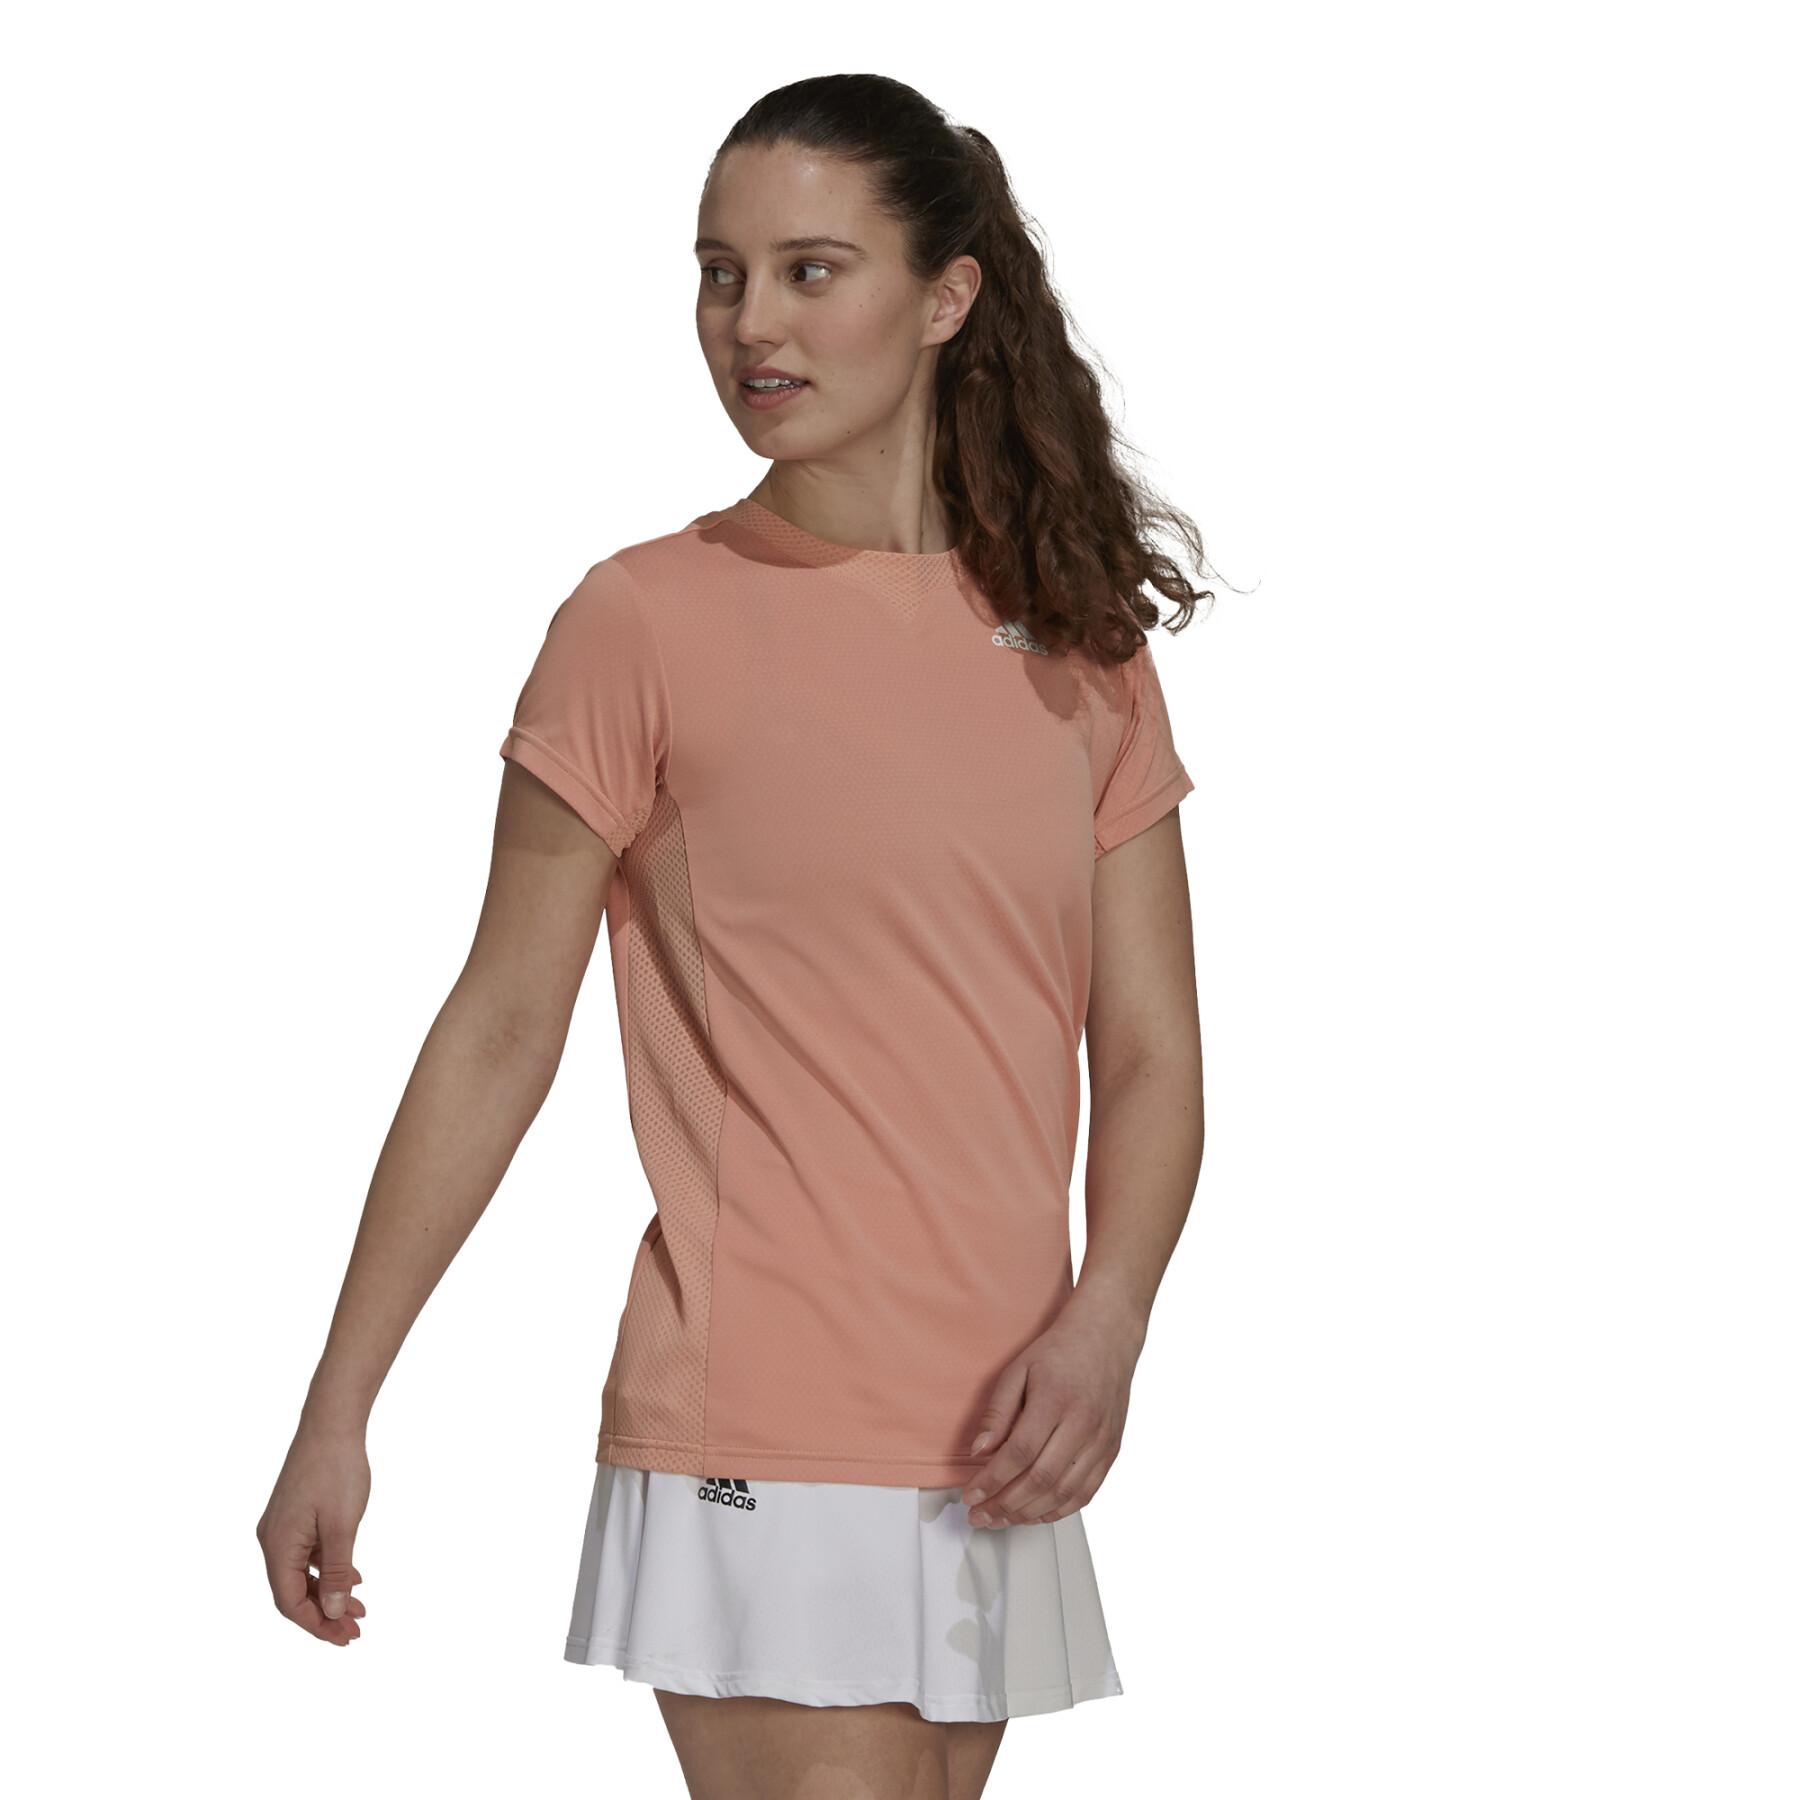 Koszulka damska adidas HEAT.RDY Tennis